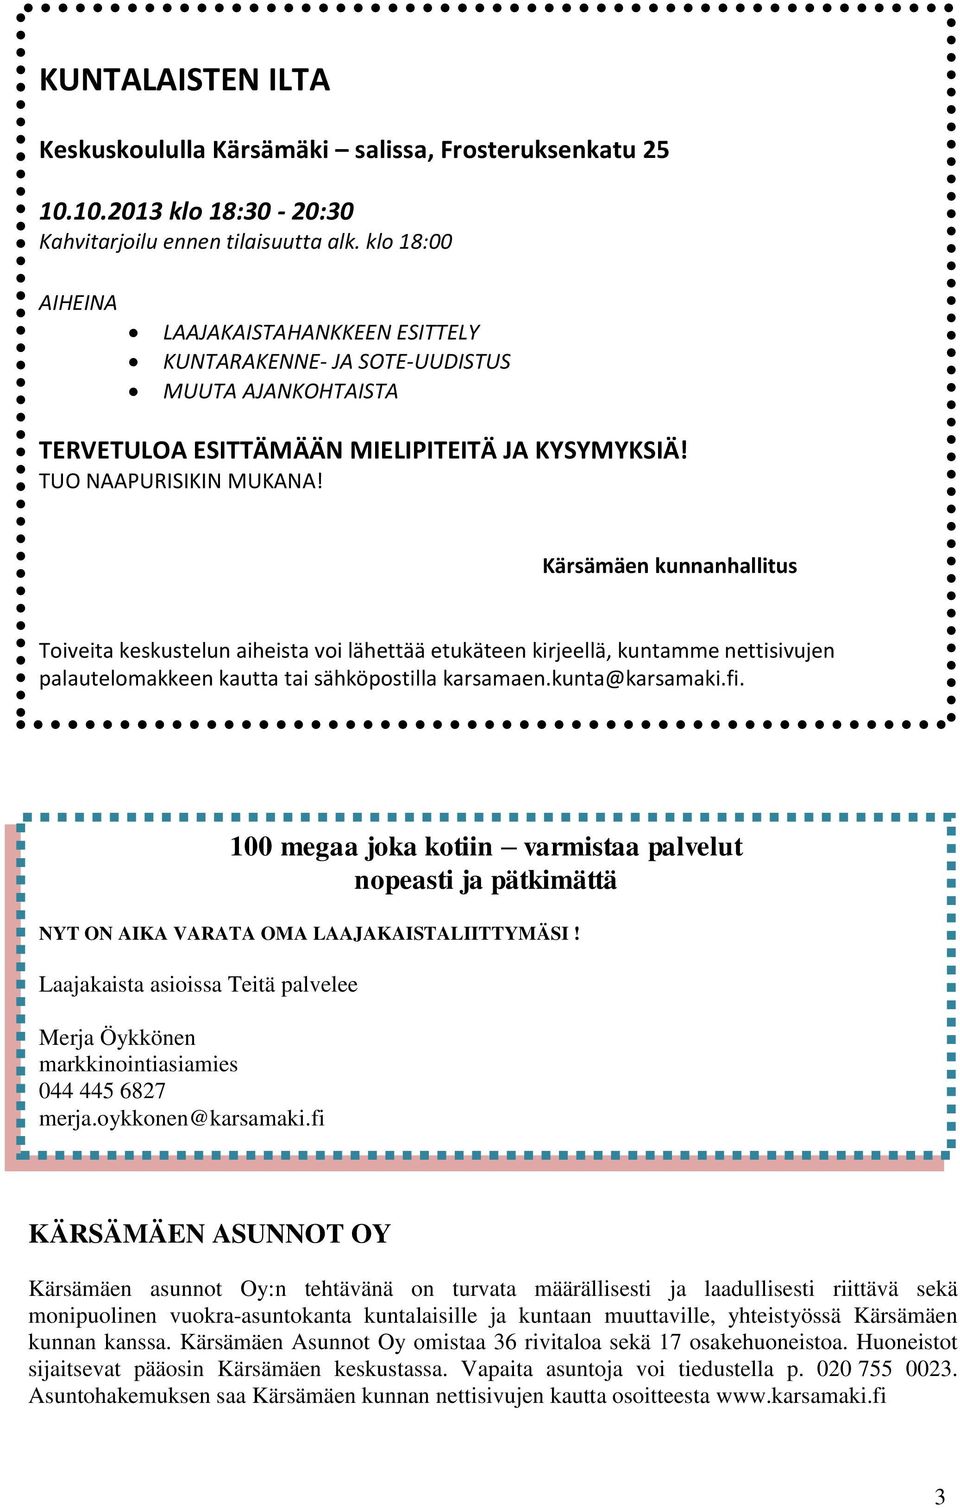 Kärsämäen kunnanhallitus Toiveita keskustelun aiheista voi lähettää etukäteen kirjeellä, kuntamme nettisivujen palautelomakkeen kautta tai sähköpostilla karsamaen.kunta@karsamaki.fi.